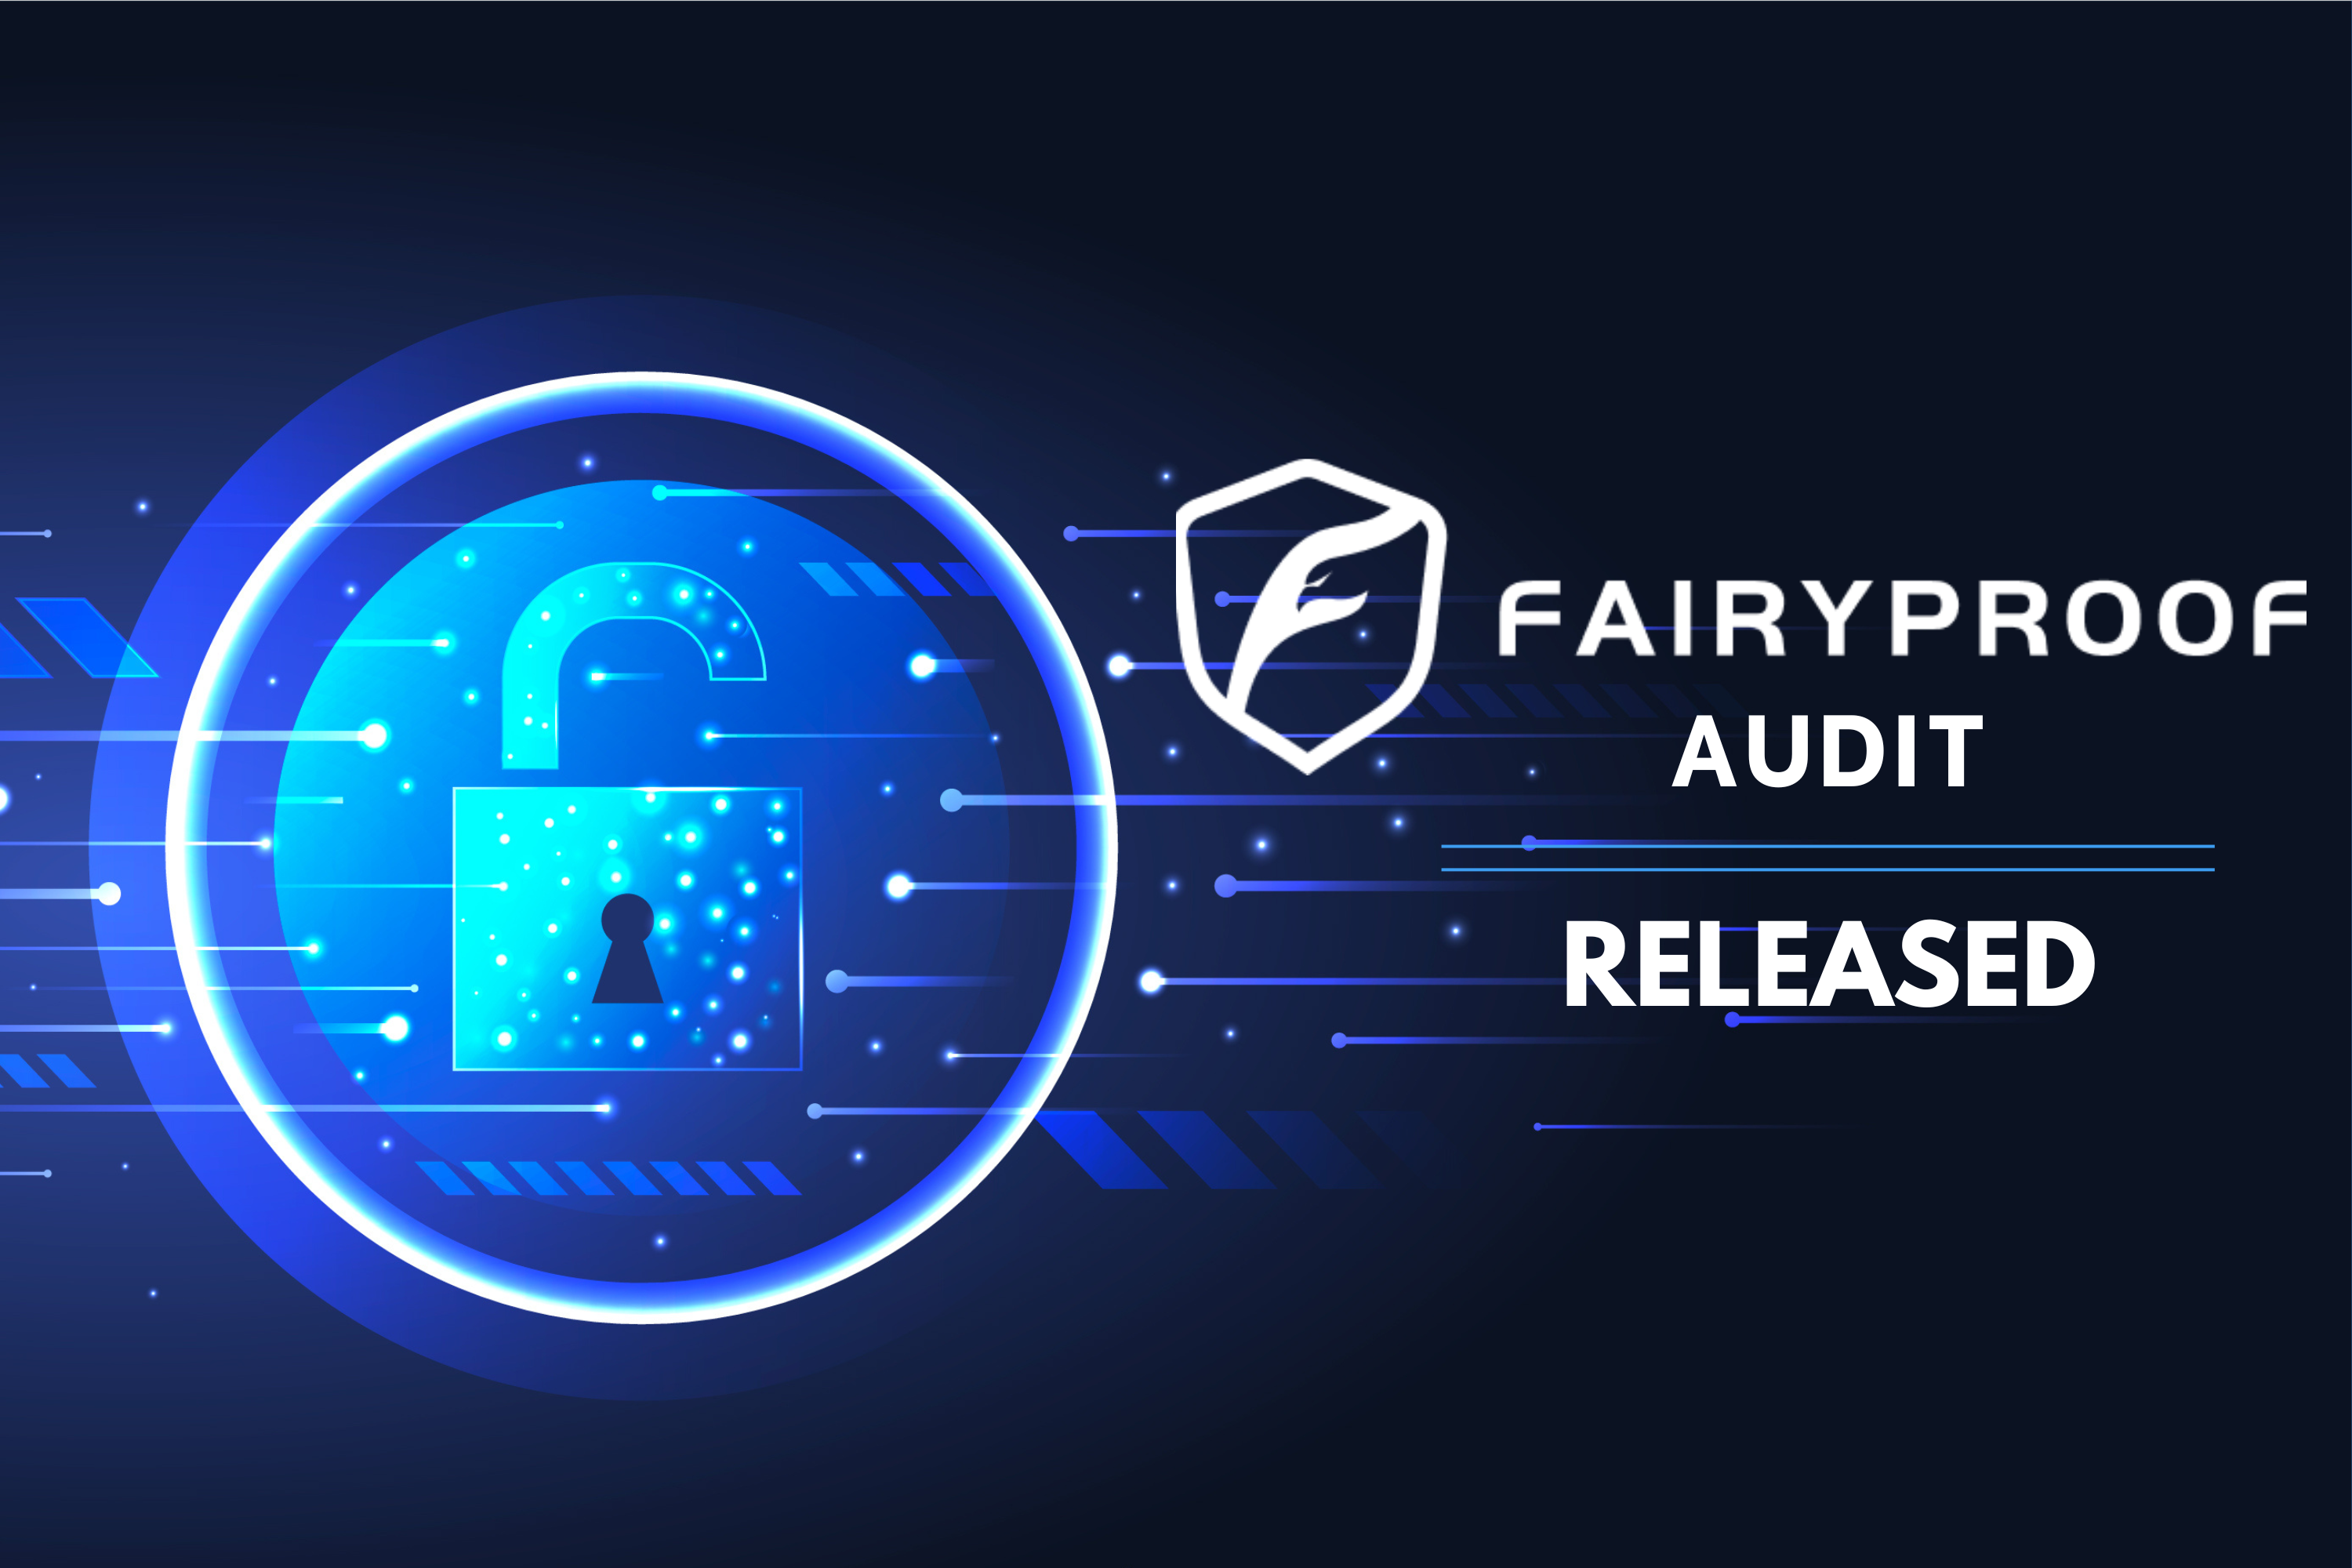 Token Panorama per rebre un baix risc en l’auditoria Fairyproof